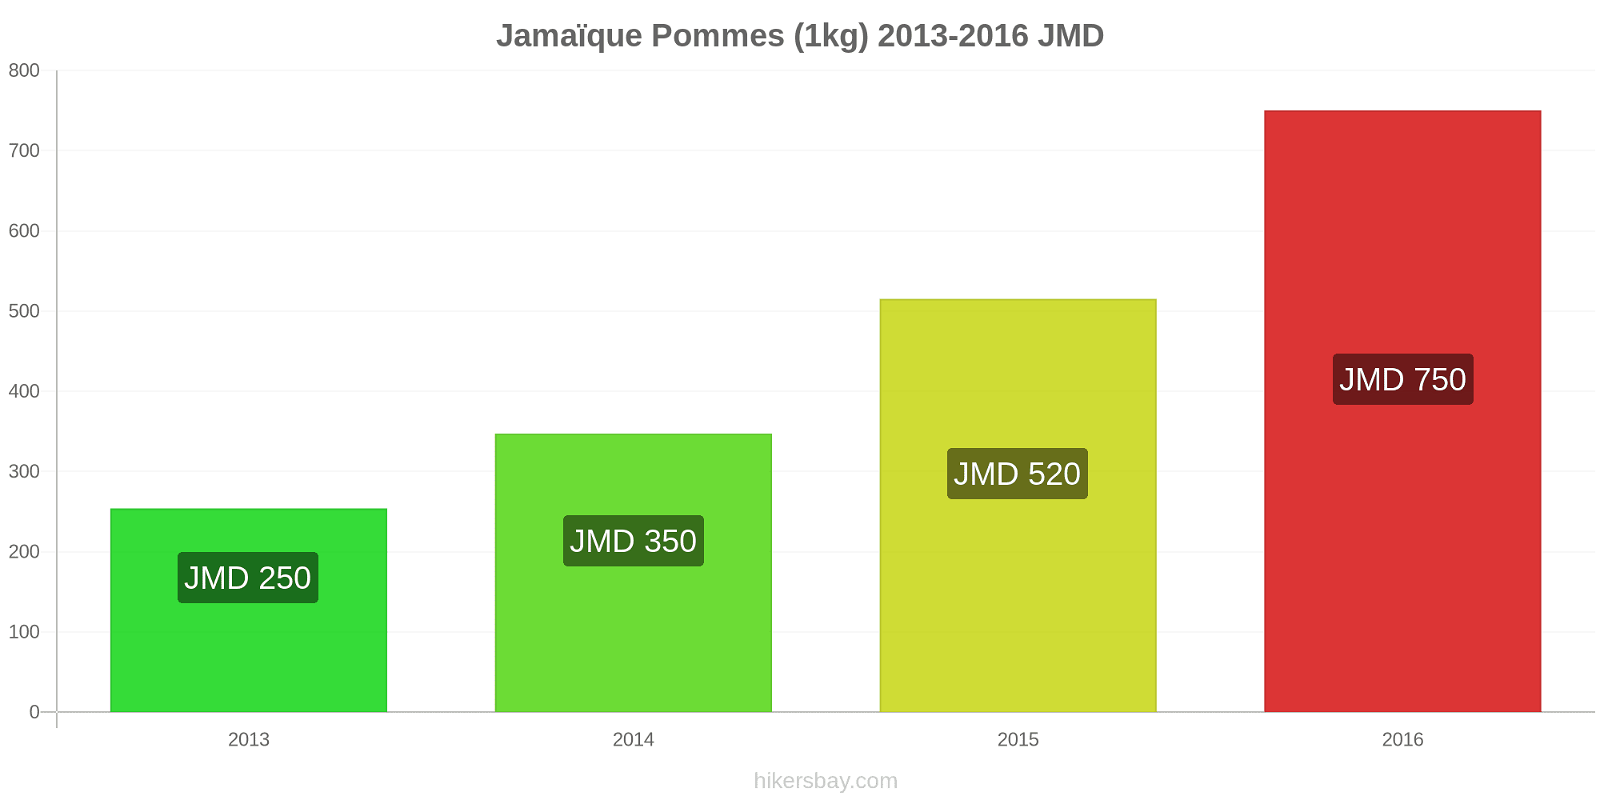 Jamaïque changements de prix Pommes (1kg) hikersbay.com